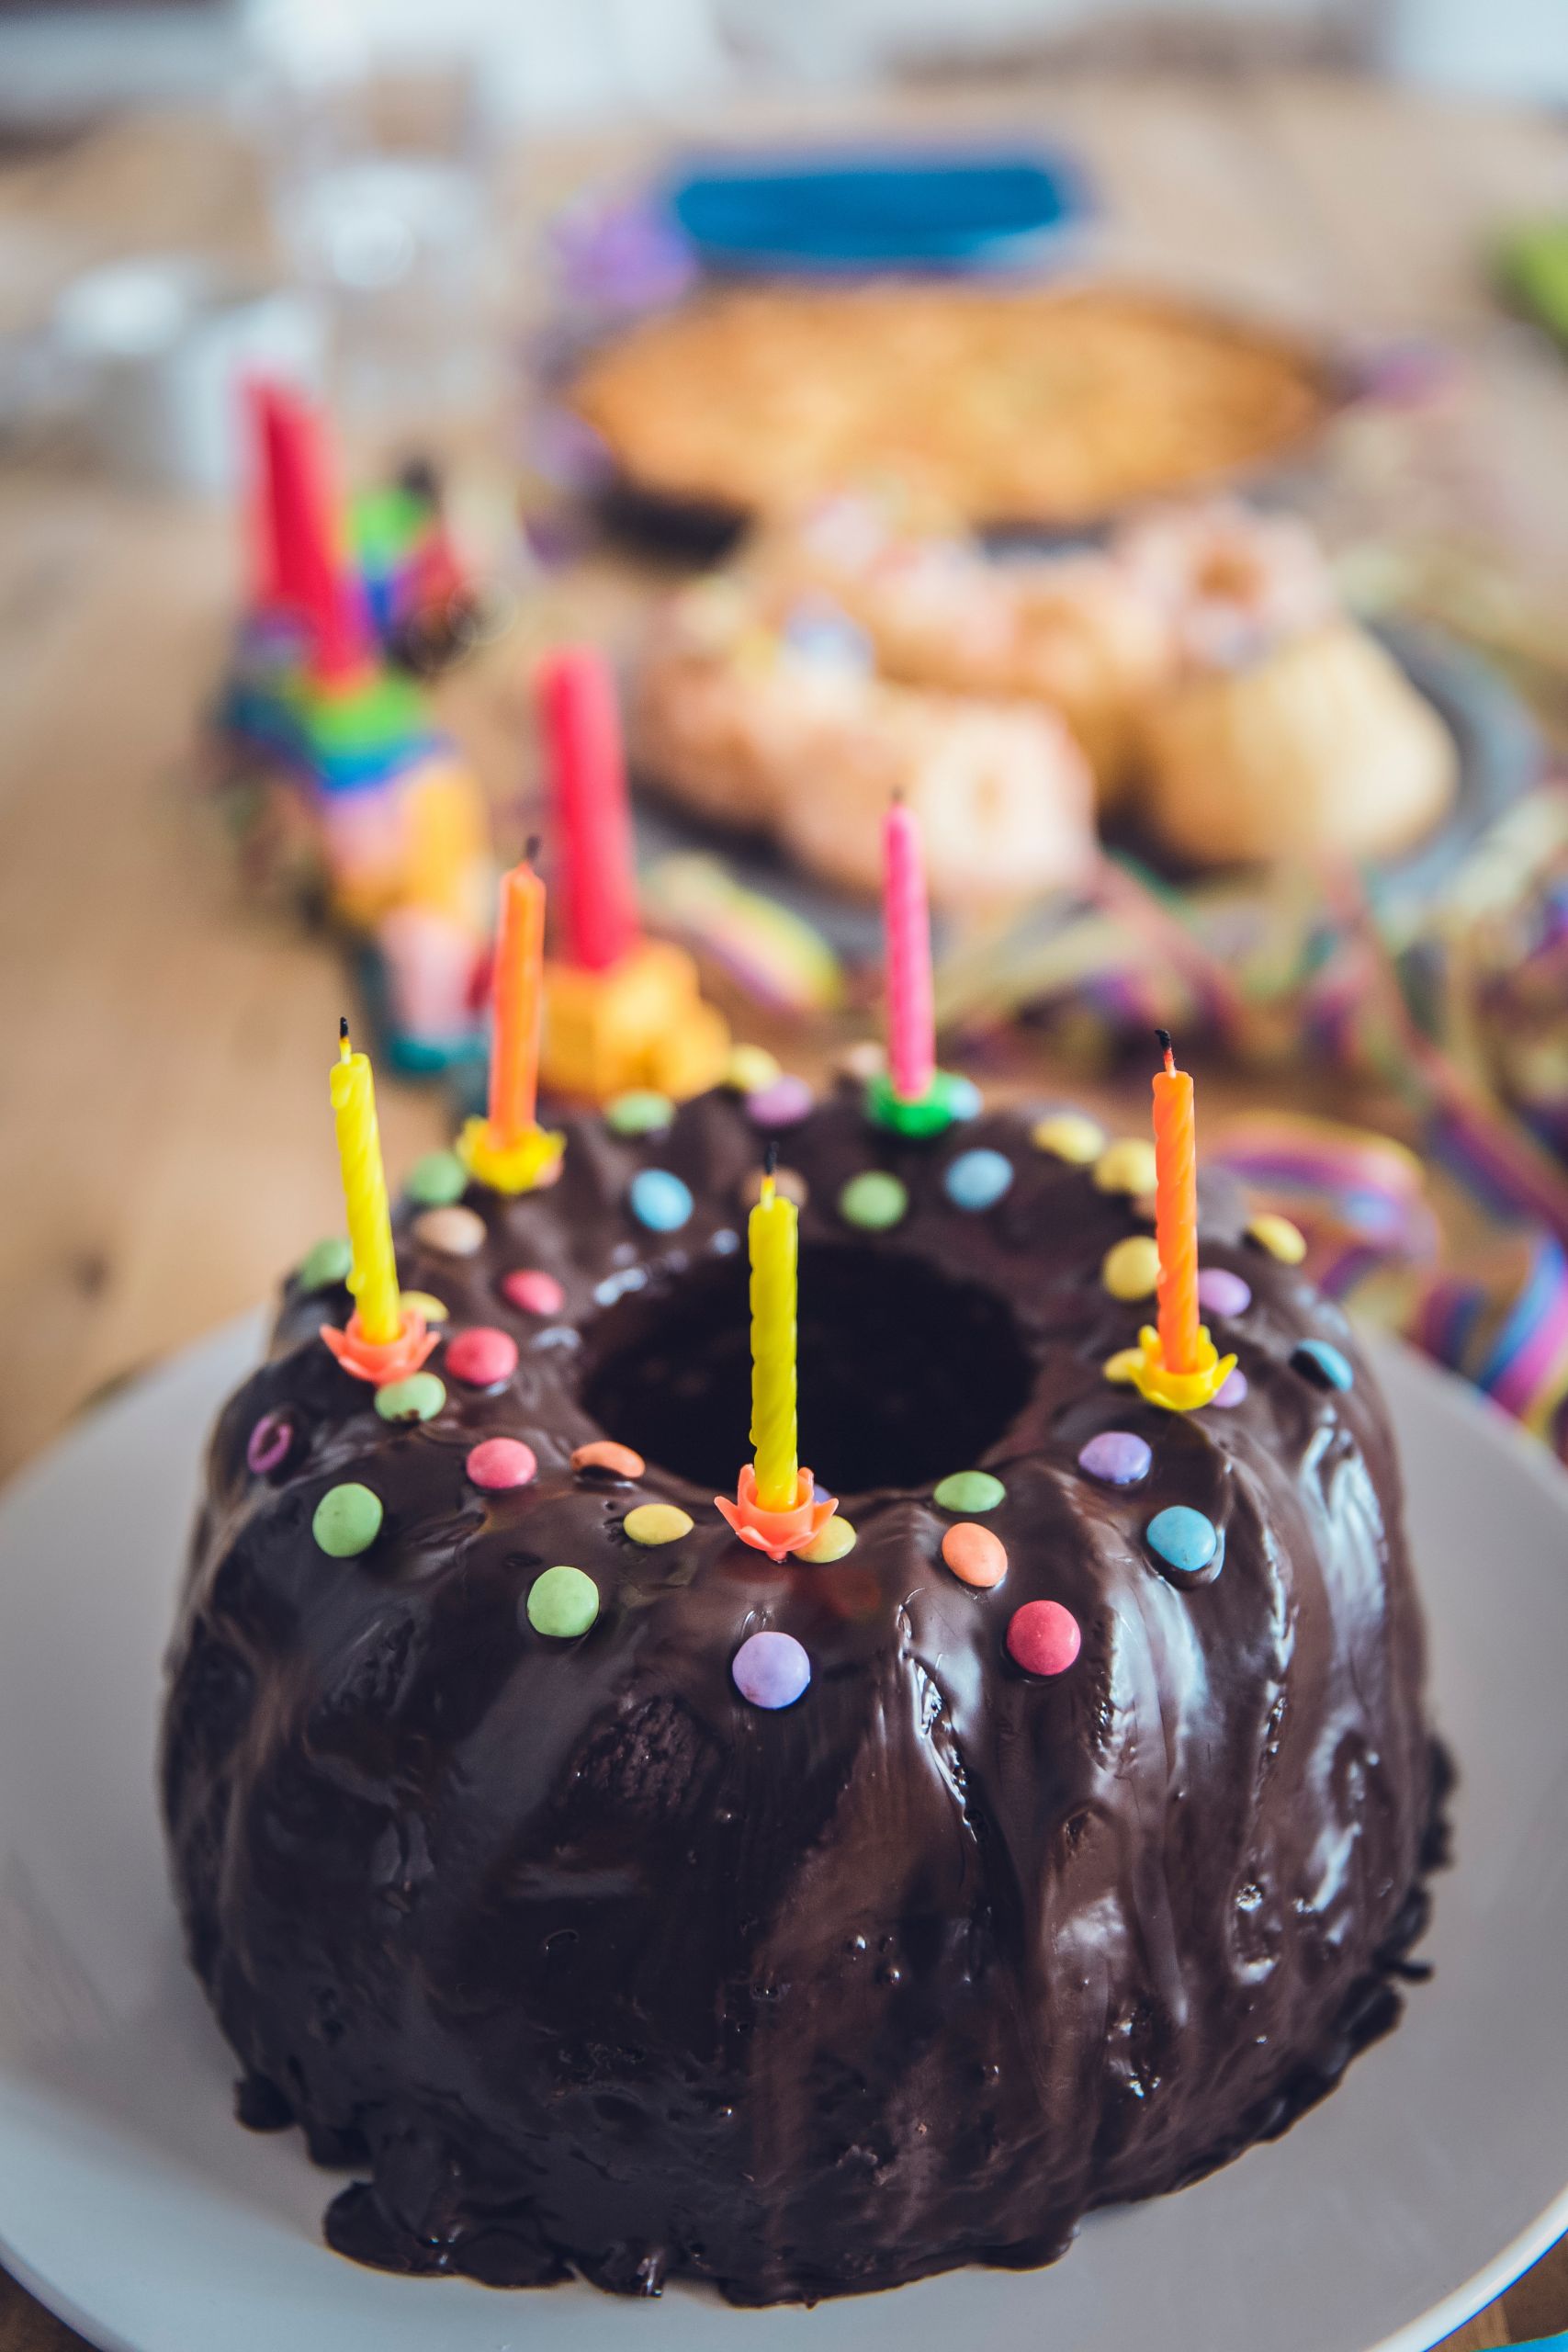 Birthday Cakes Images
 500 Amazing Birthday Cake s · Pexels · Free Stock s